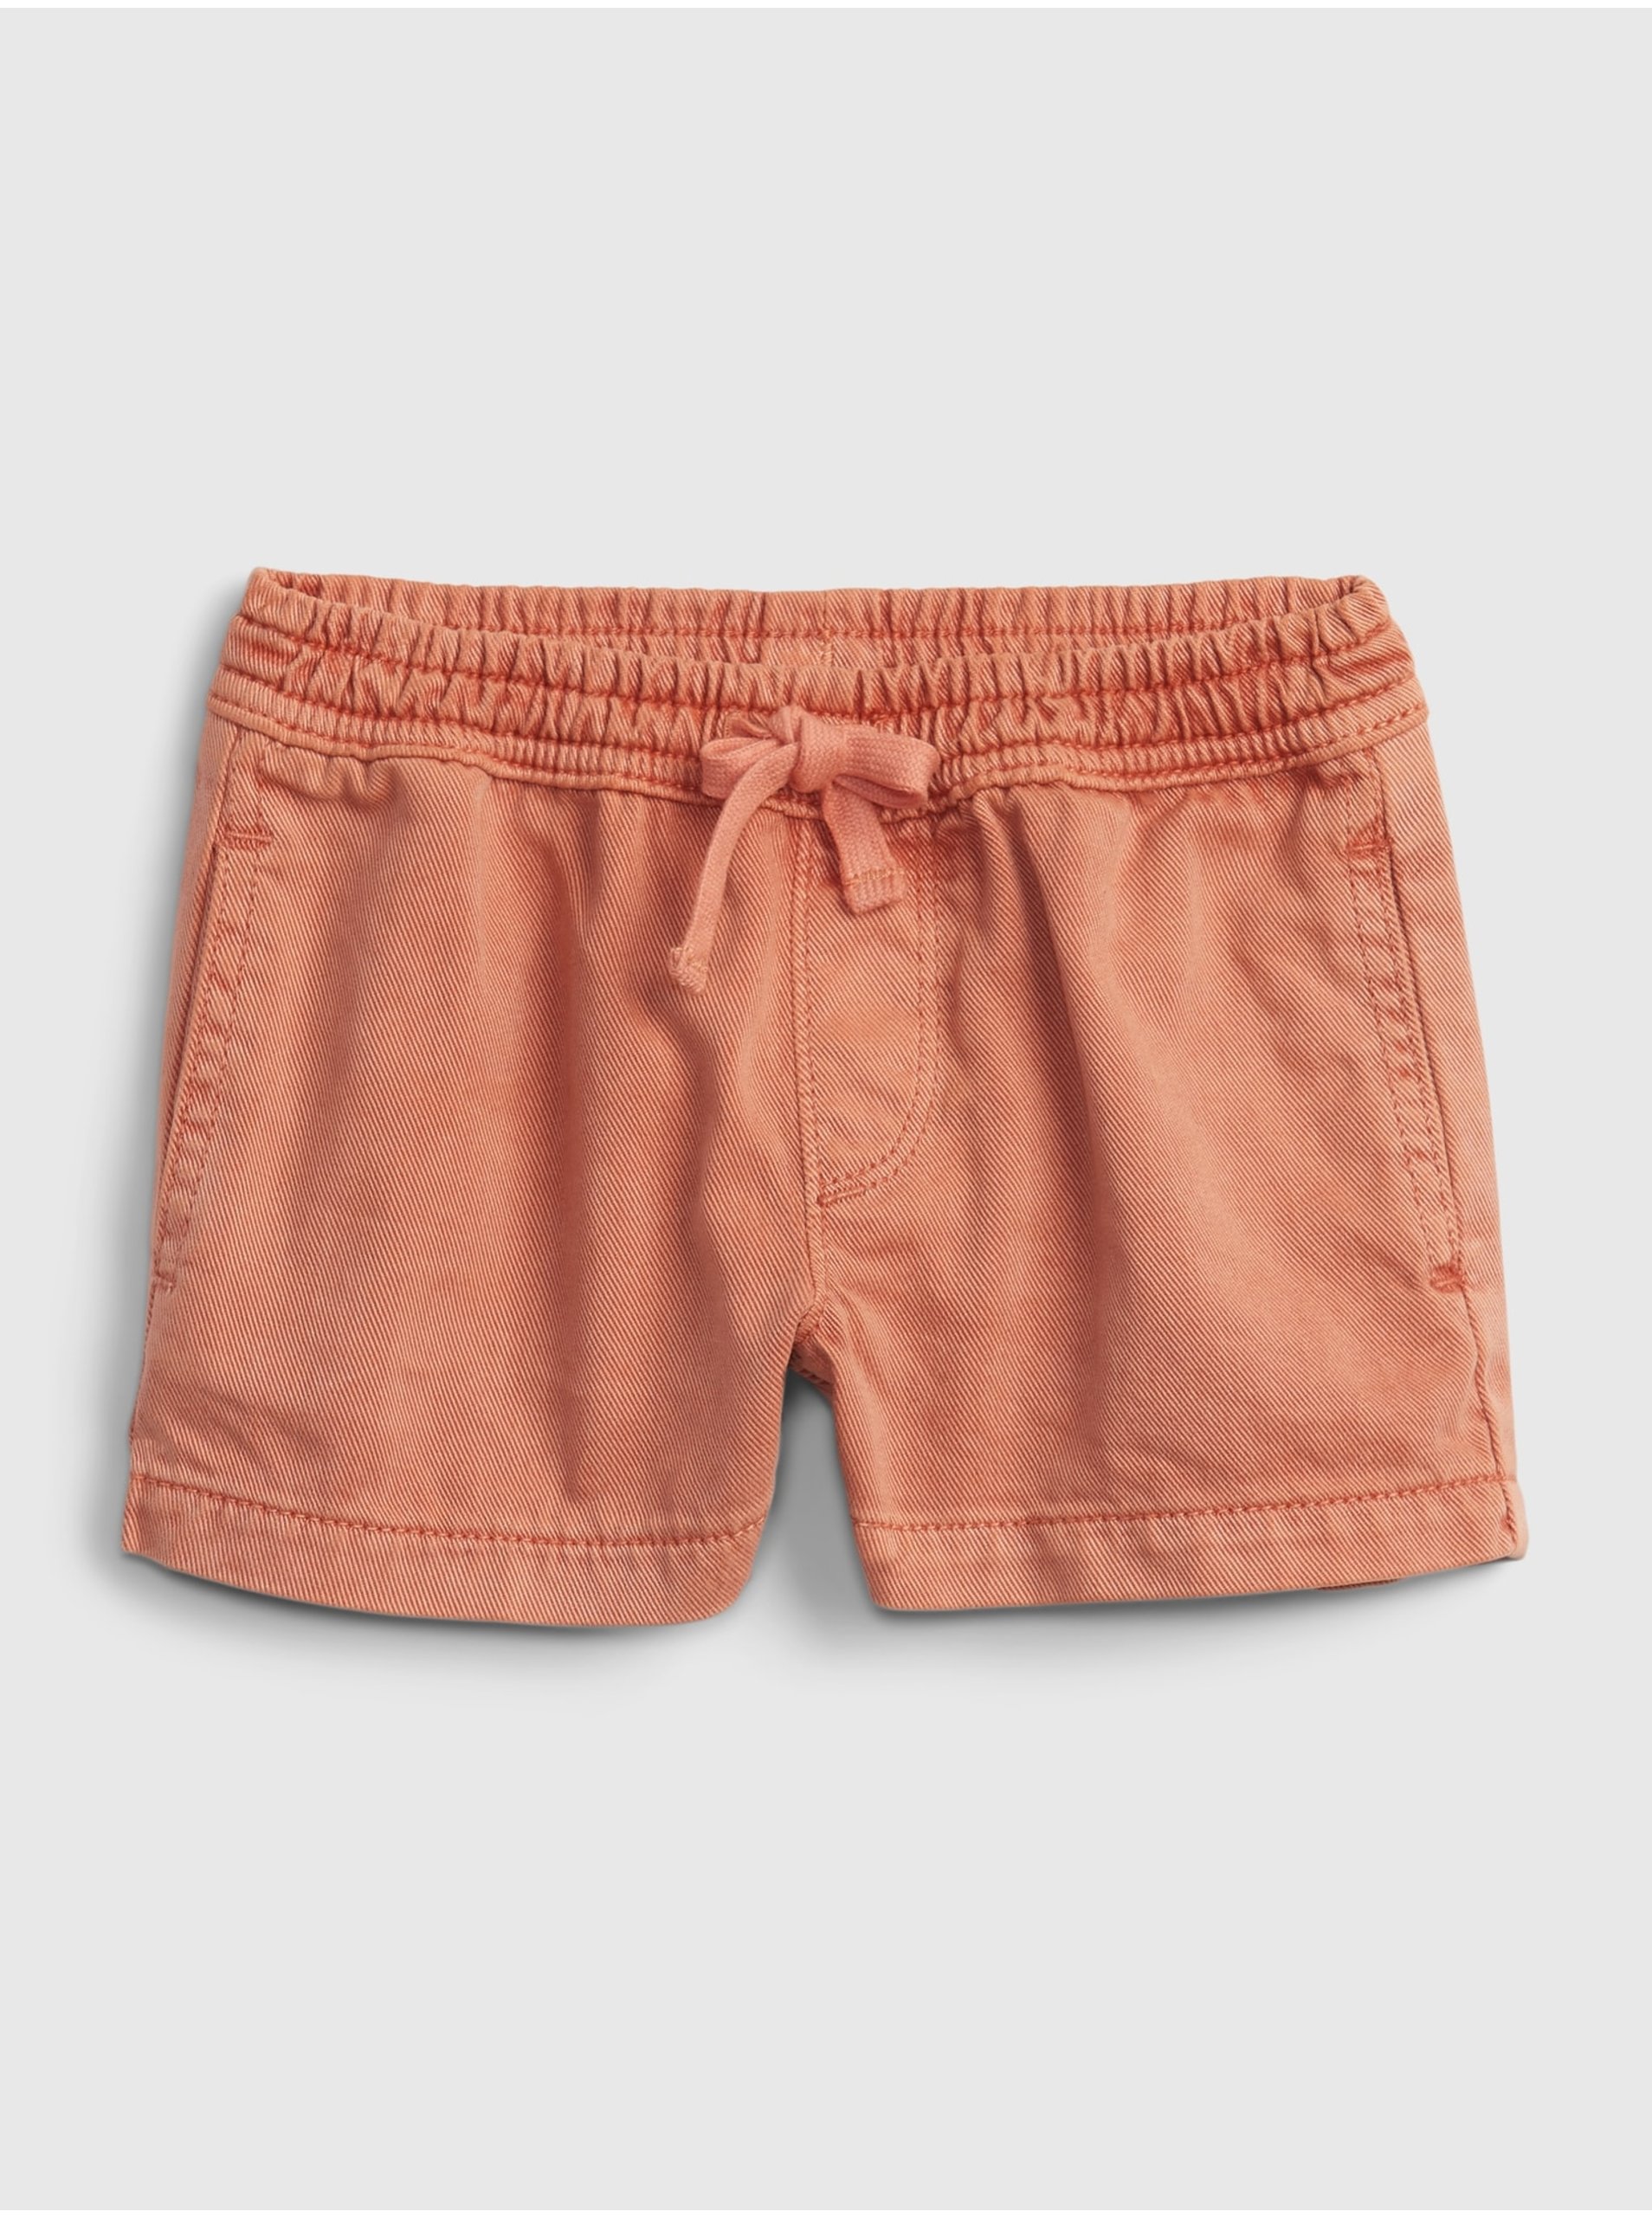 E-shop Oranžové holčičí dětské kraťasy pull-on shorts